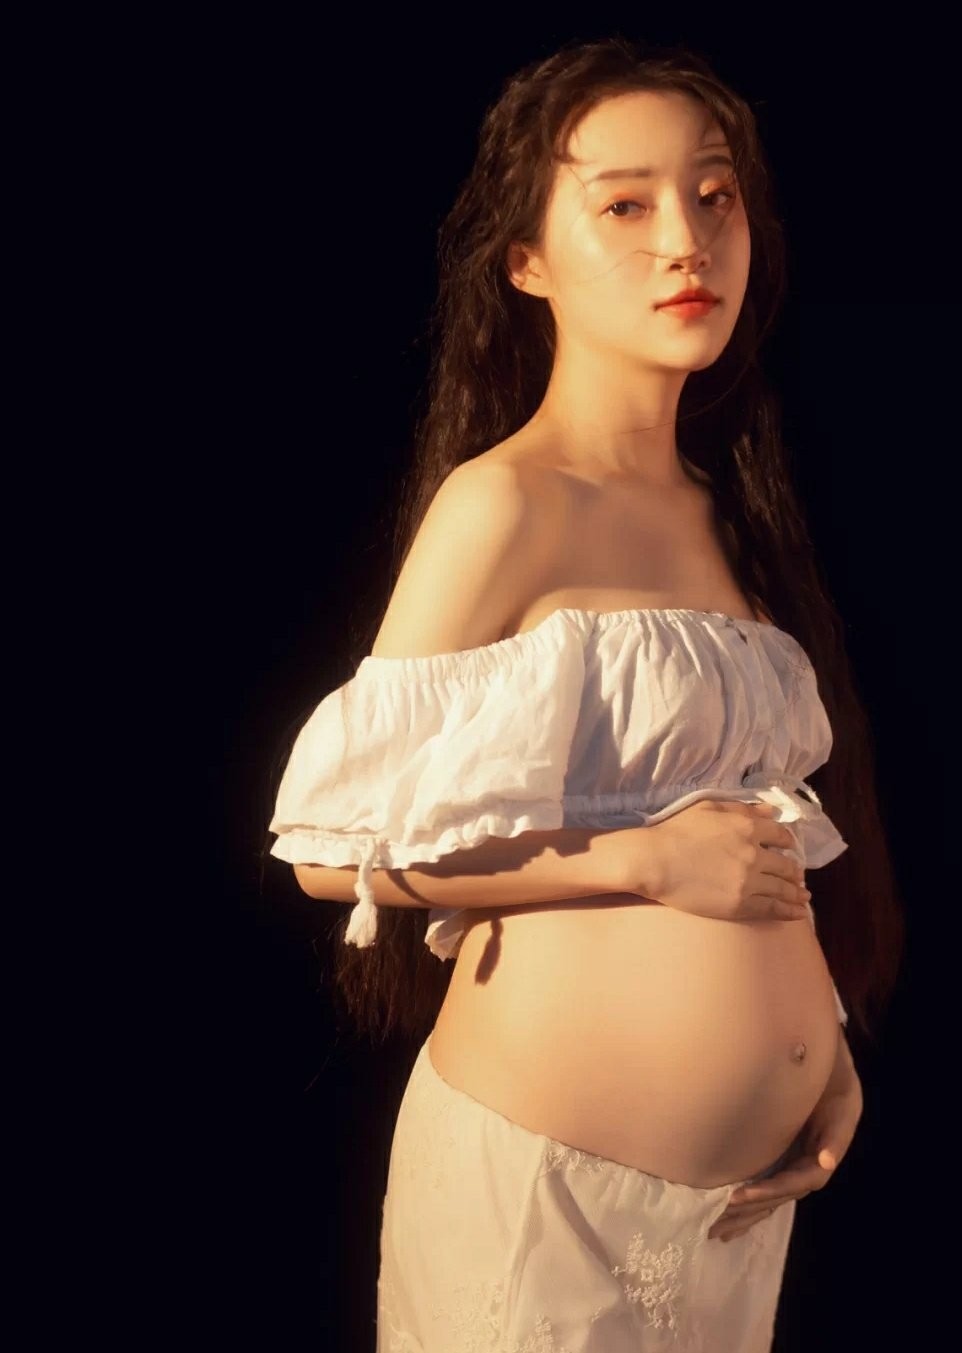 国产孕妇美图分享 纯美图不露点